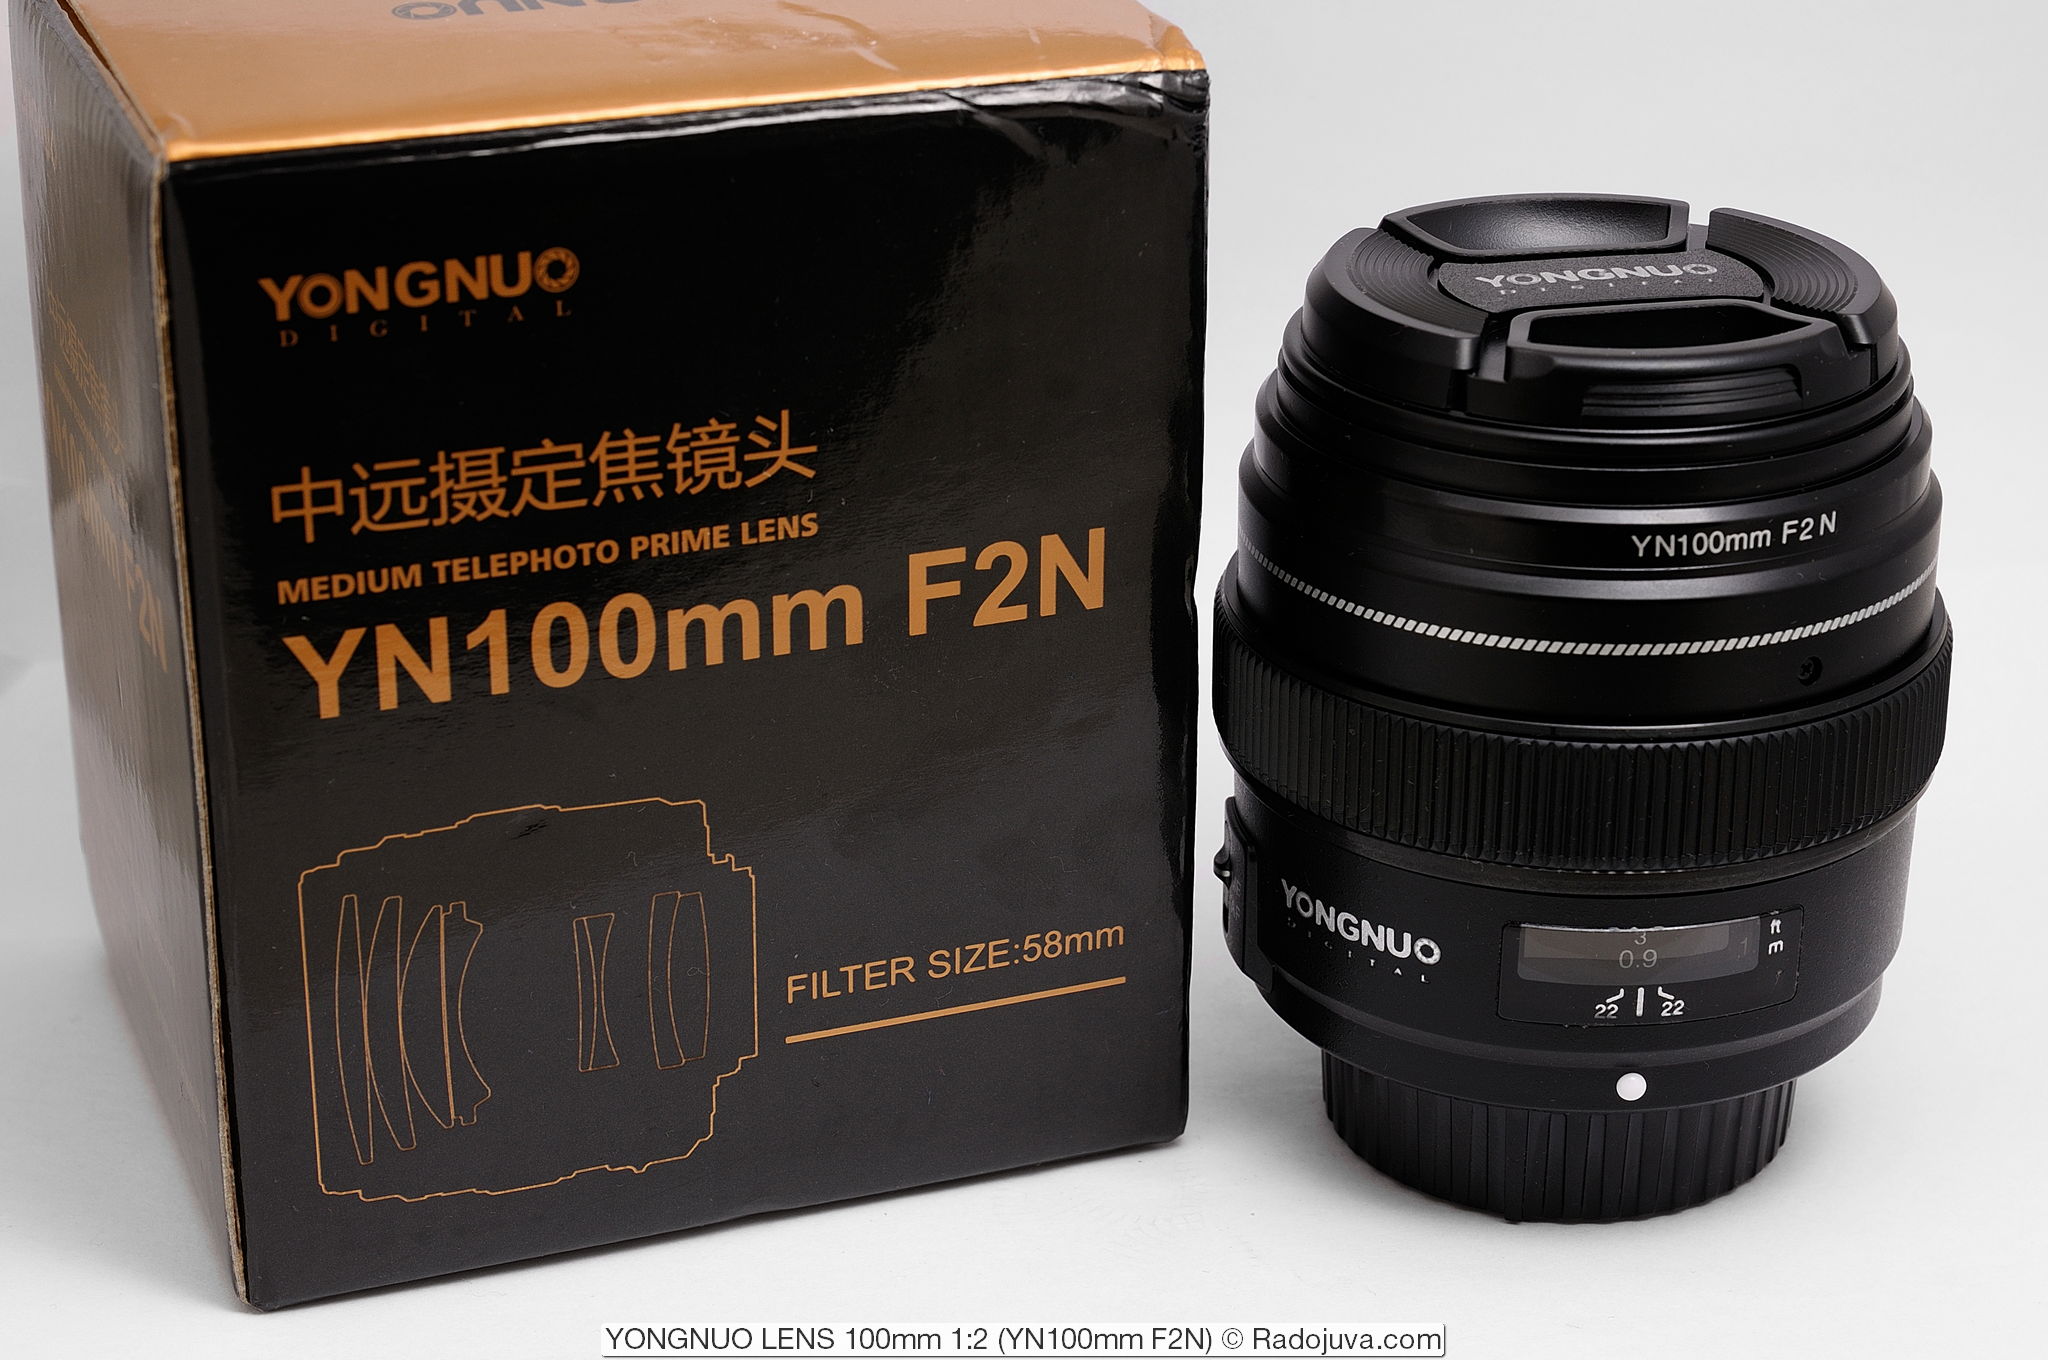 YONGNUO LENS 100mm 1: 2 YN100mm F2N for Nikon